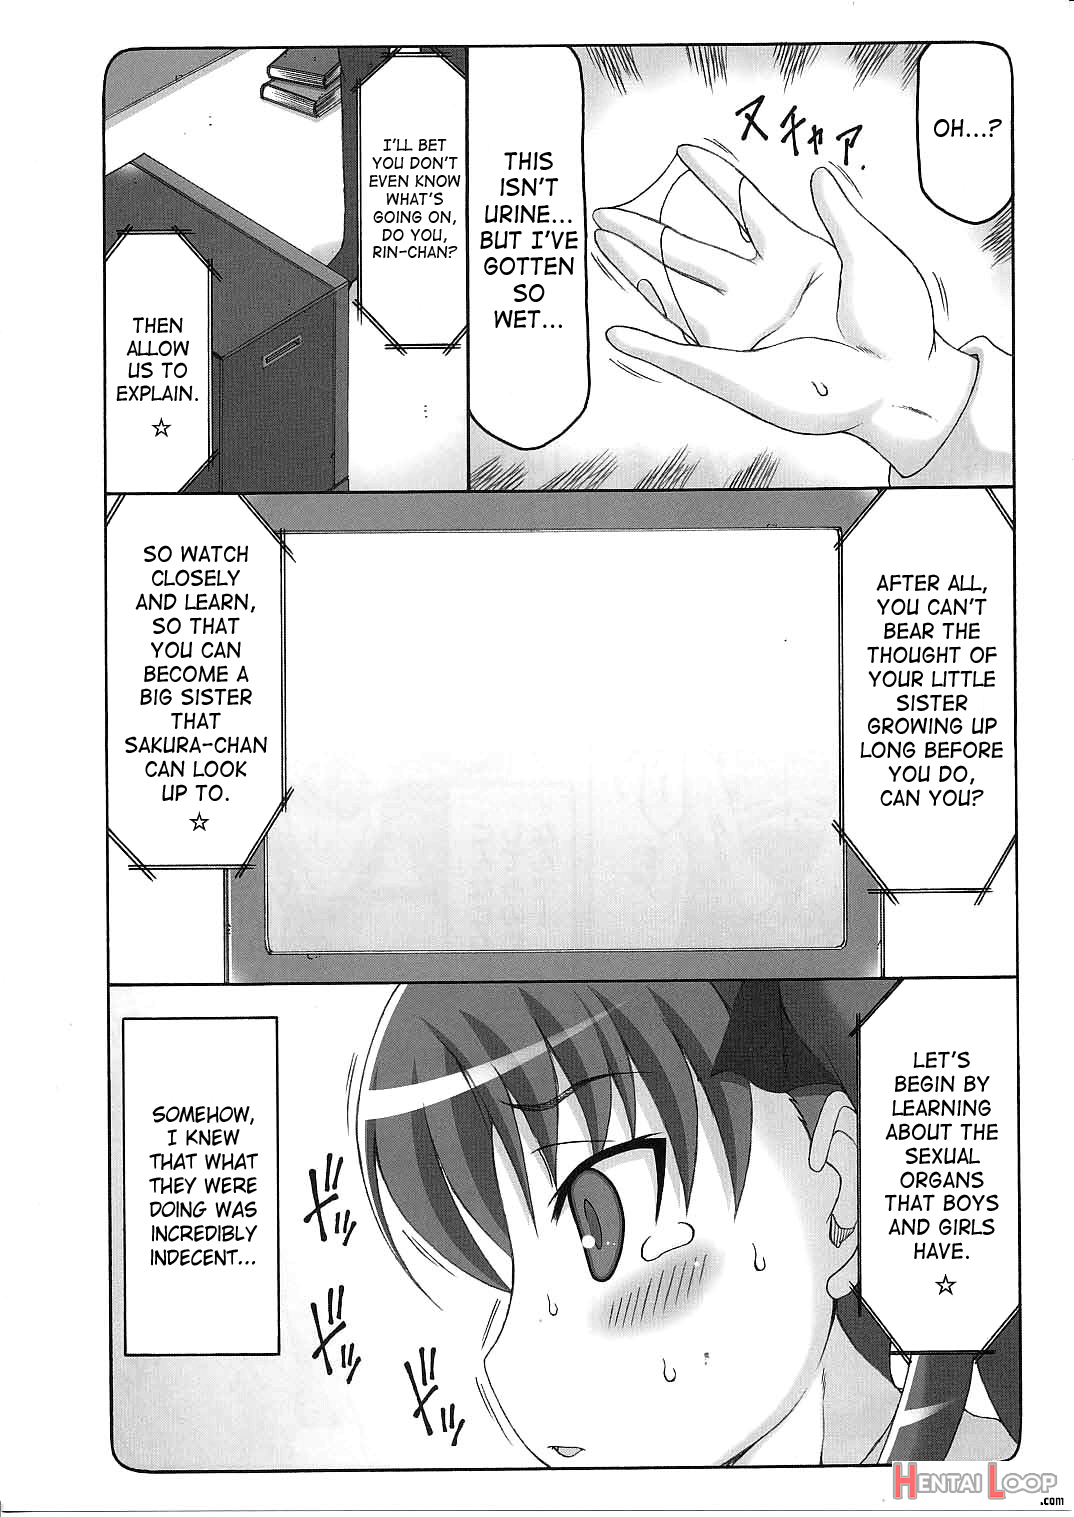 Kotori Zero 3 page 9